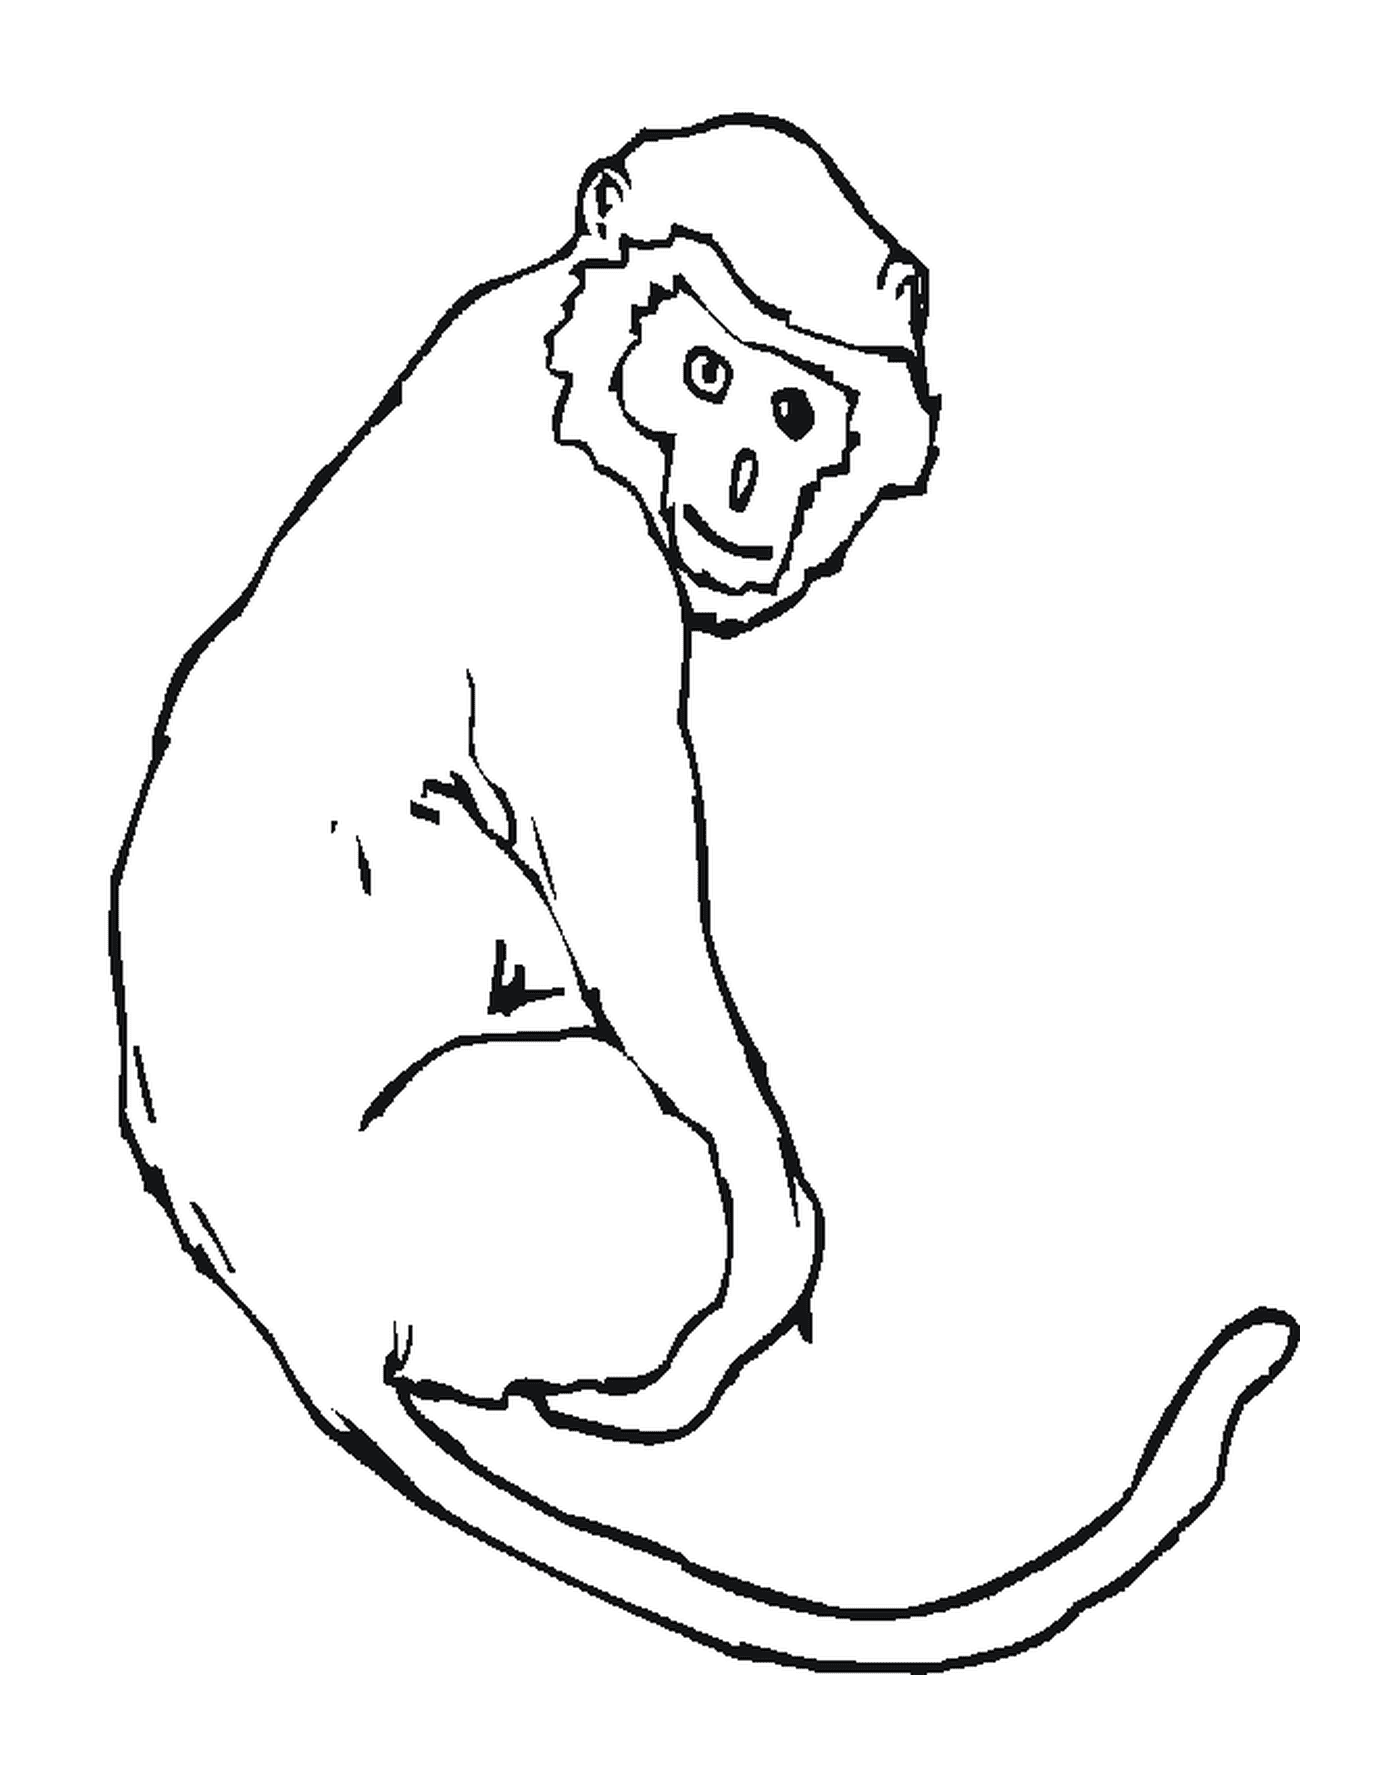  Monkey mit einem langen Schwanz 